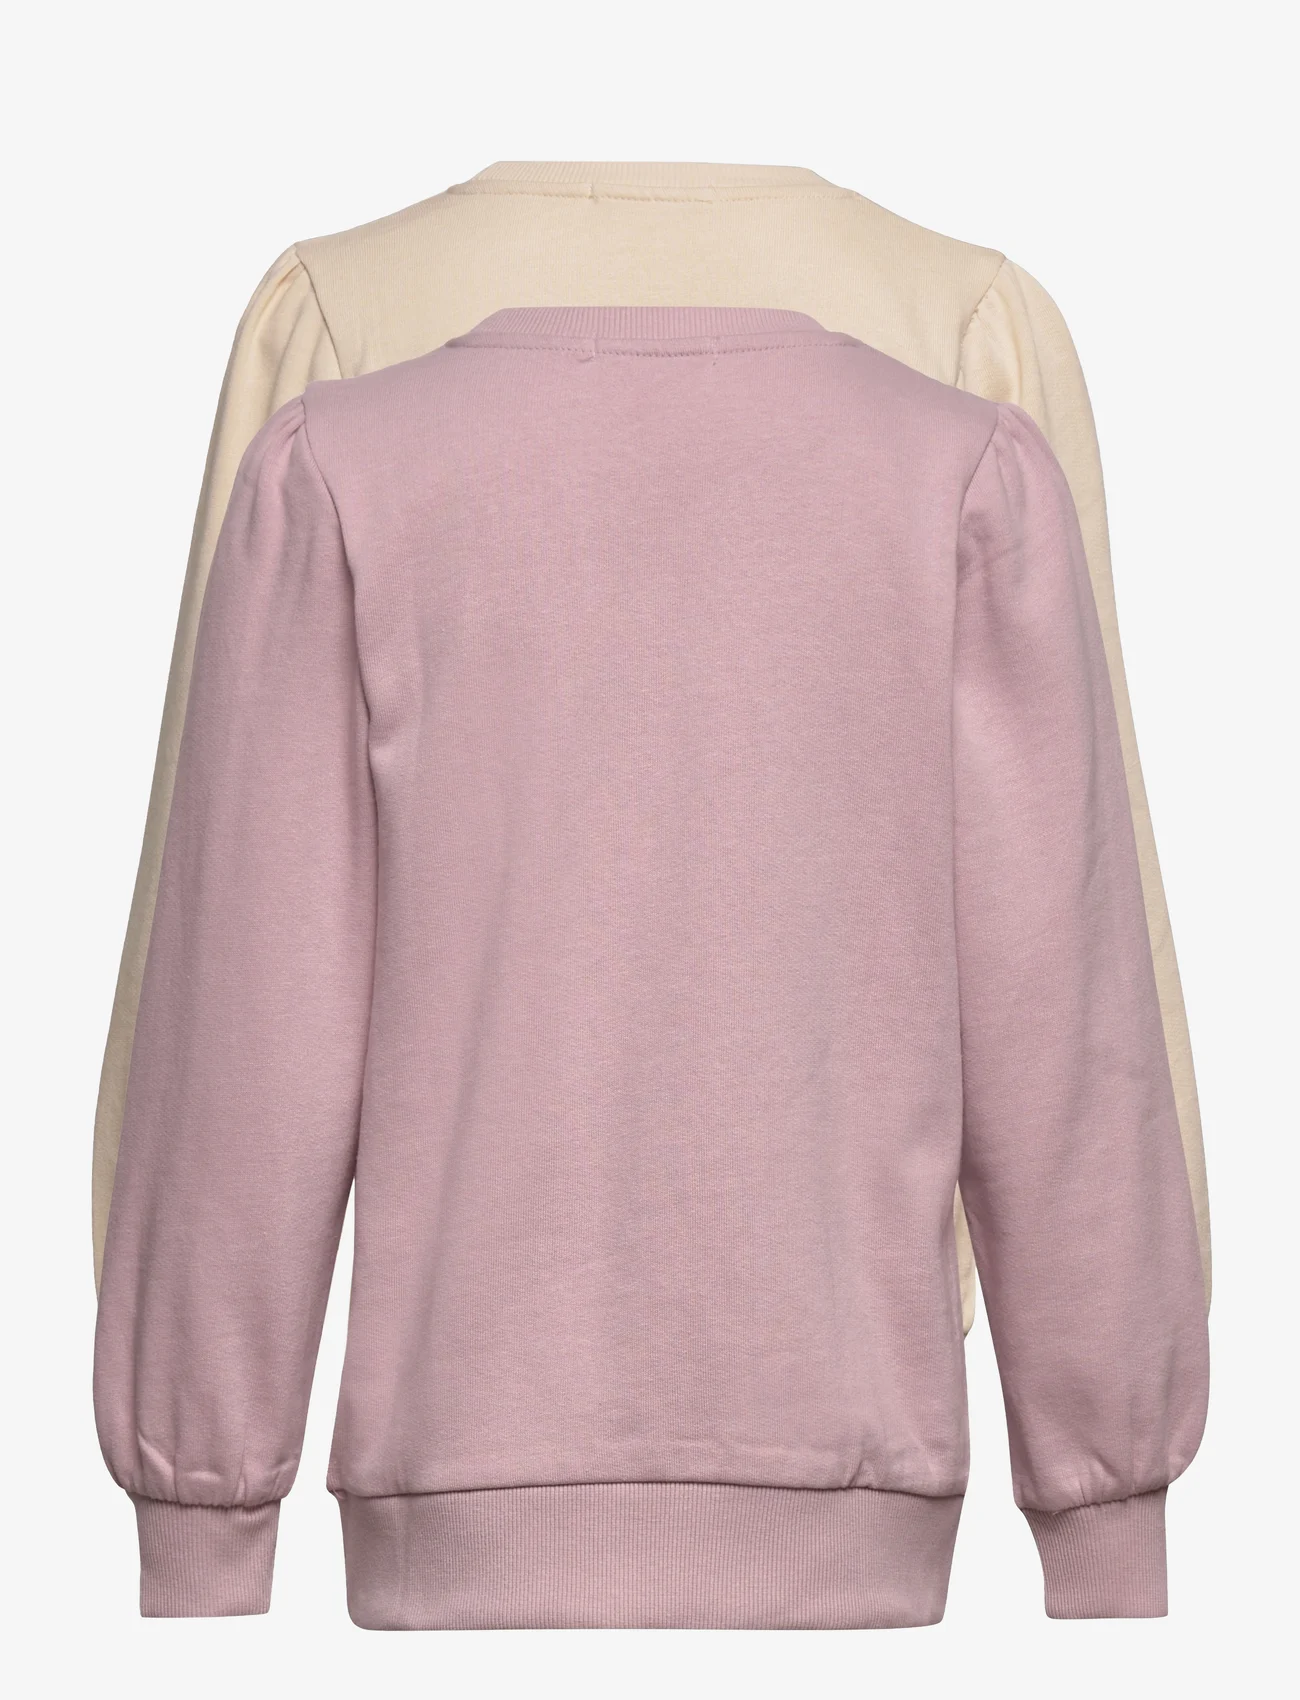 Minymo - Sweat Shirt girl (2-pack) - mažiausios kainos - violet ice - 1